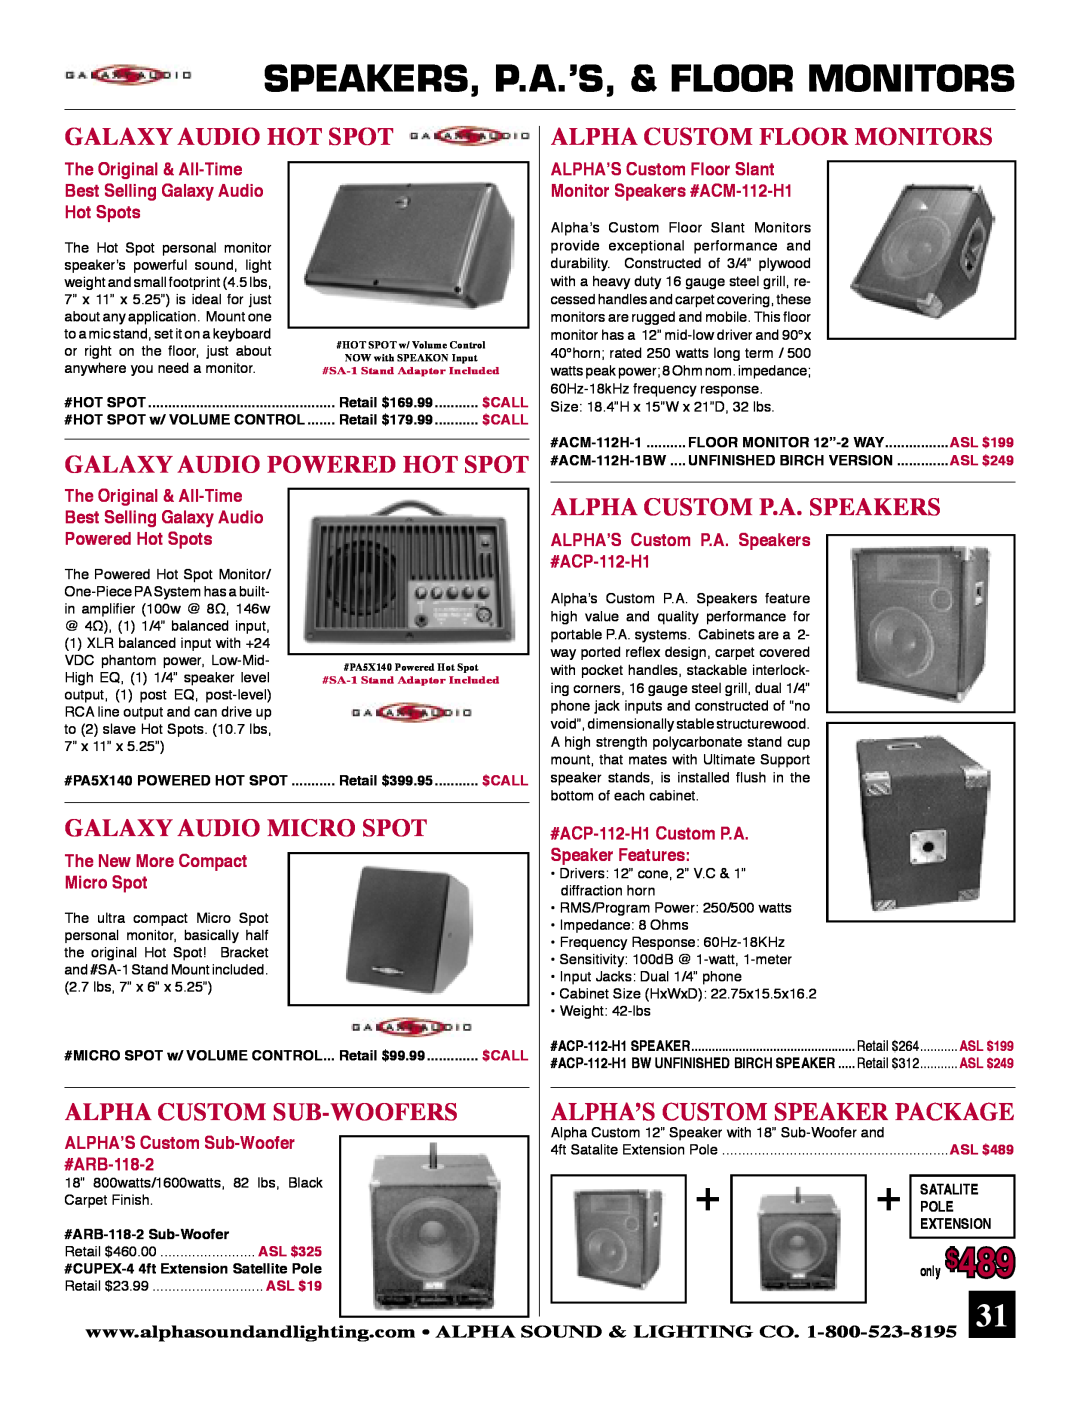 Ultimate Products JRX112M, JRX125 Speakers, P.A.’S, & Floor Monitors, Galaxy Audio Hot Spot Alpha Custom Floor Monitors 